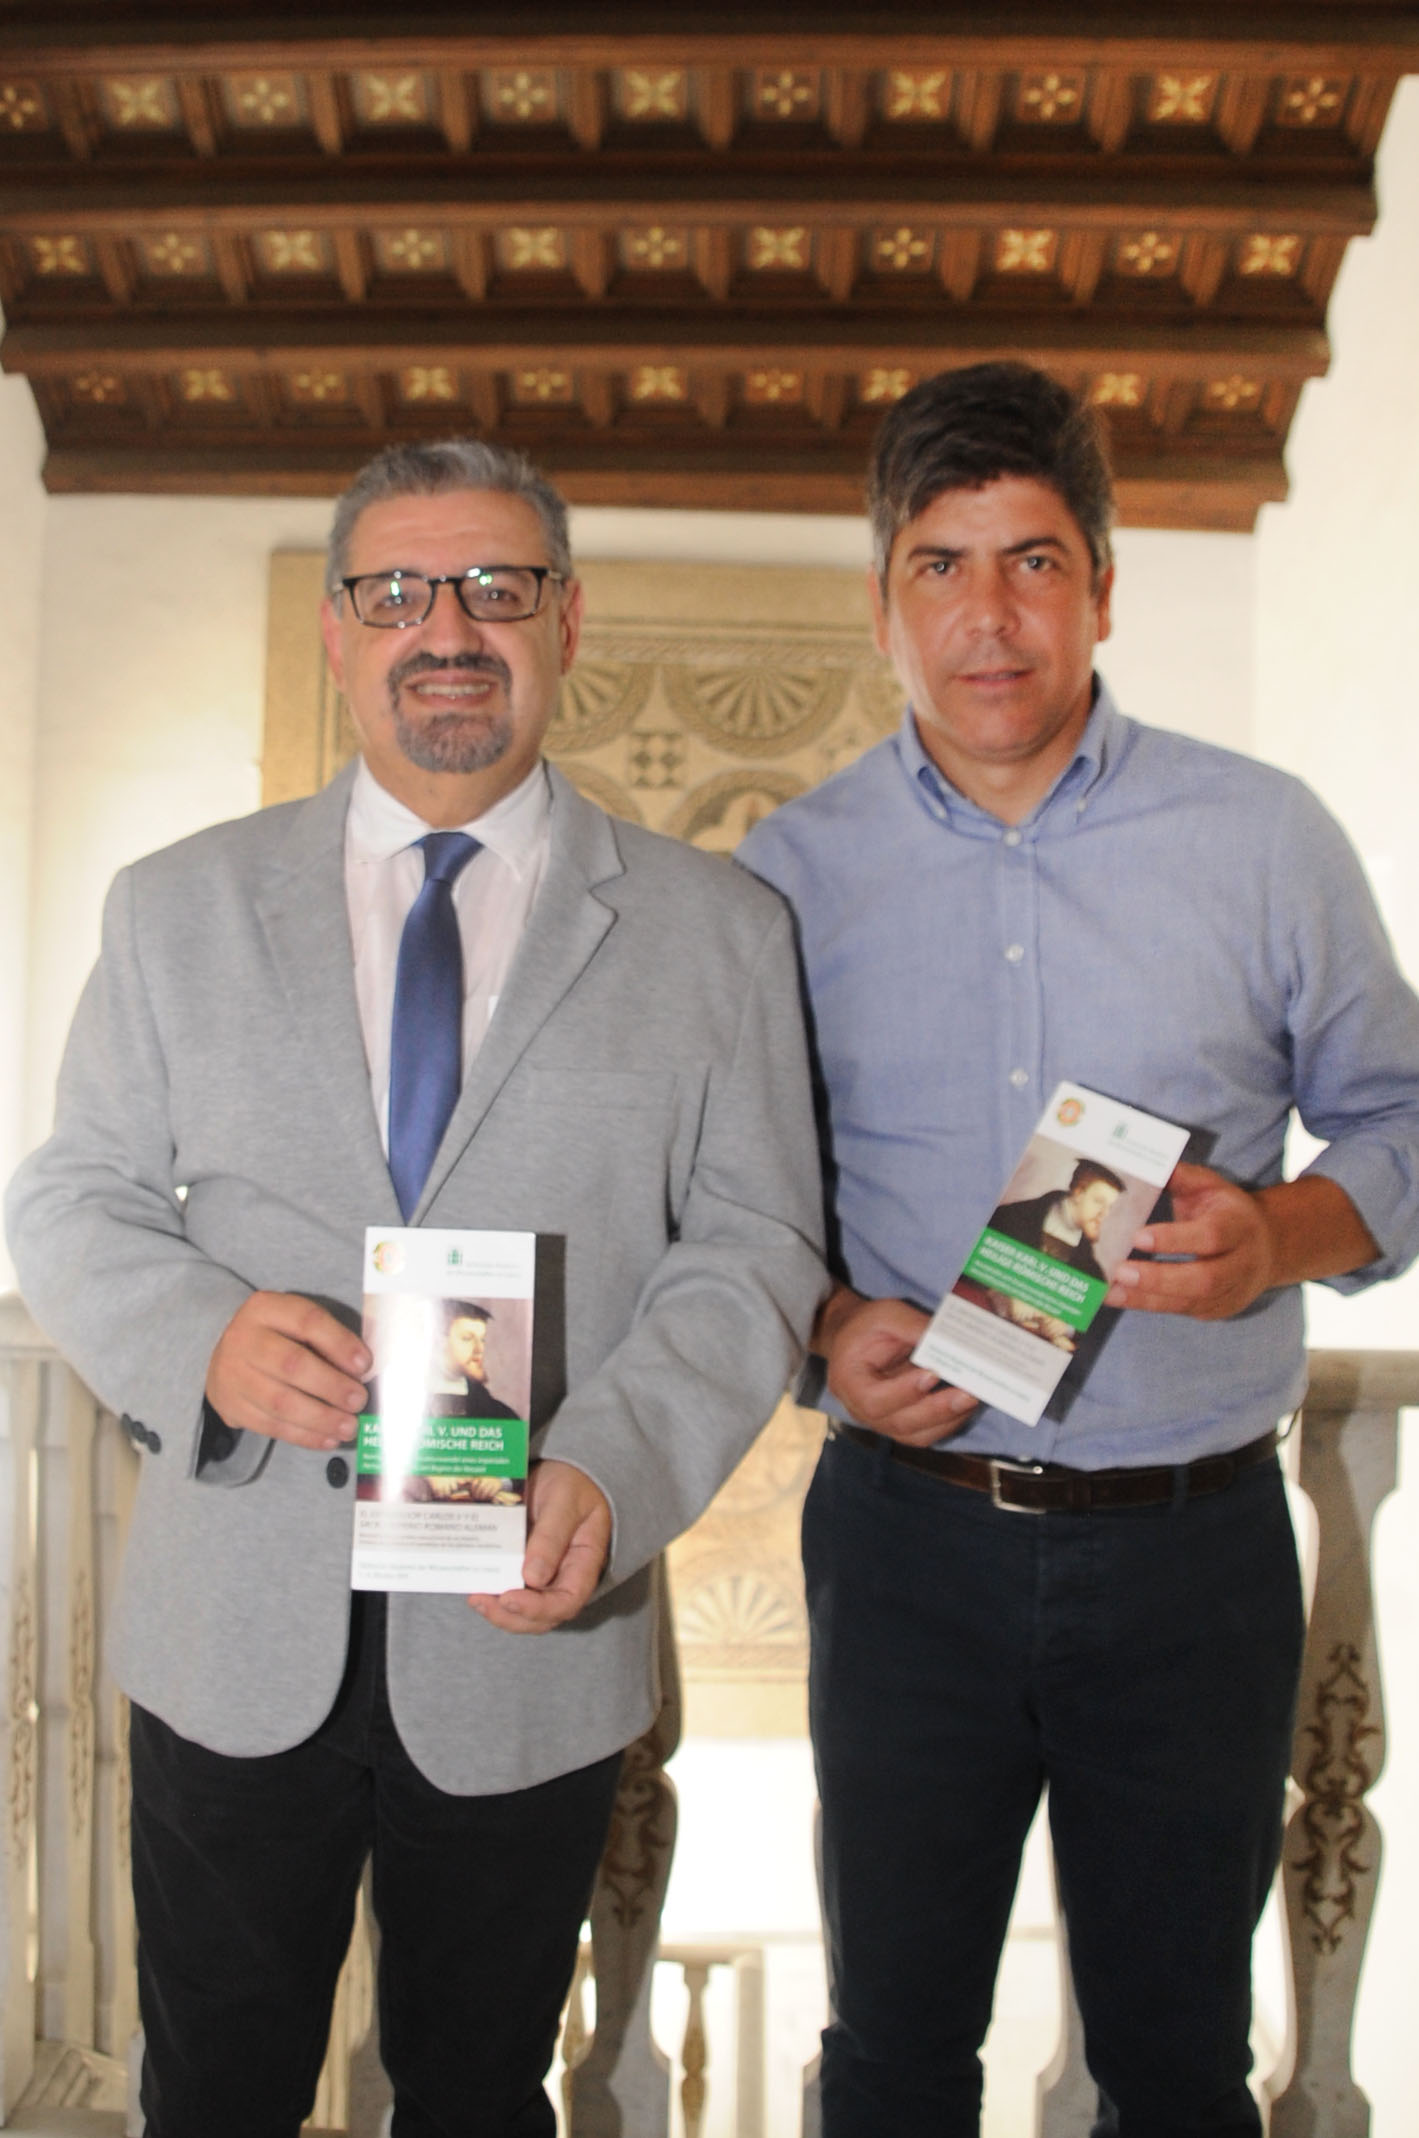 La Diputación estrecha su colaboración con el Instituto Español de Ciencias Histórico Jurídicas.